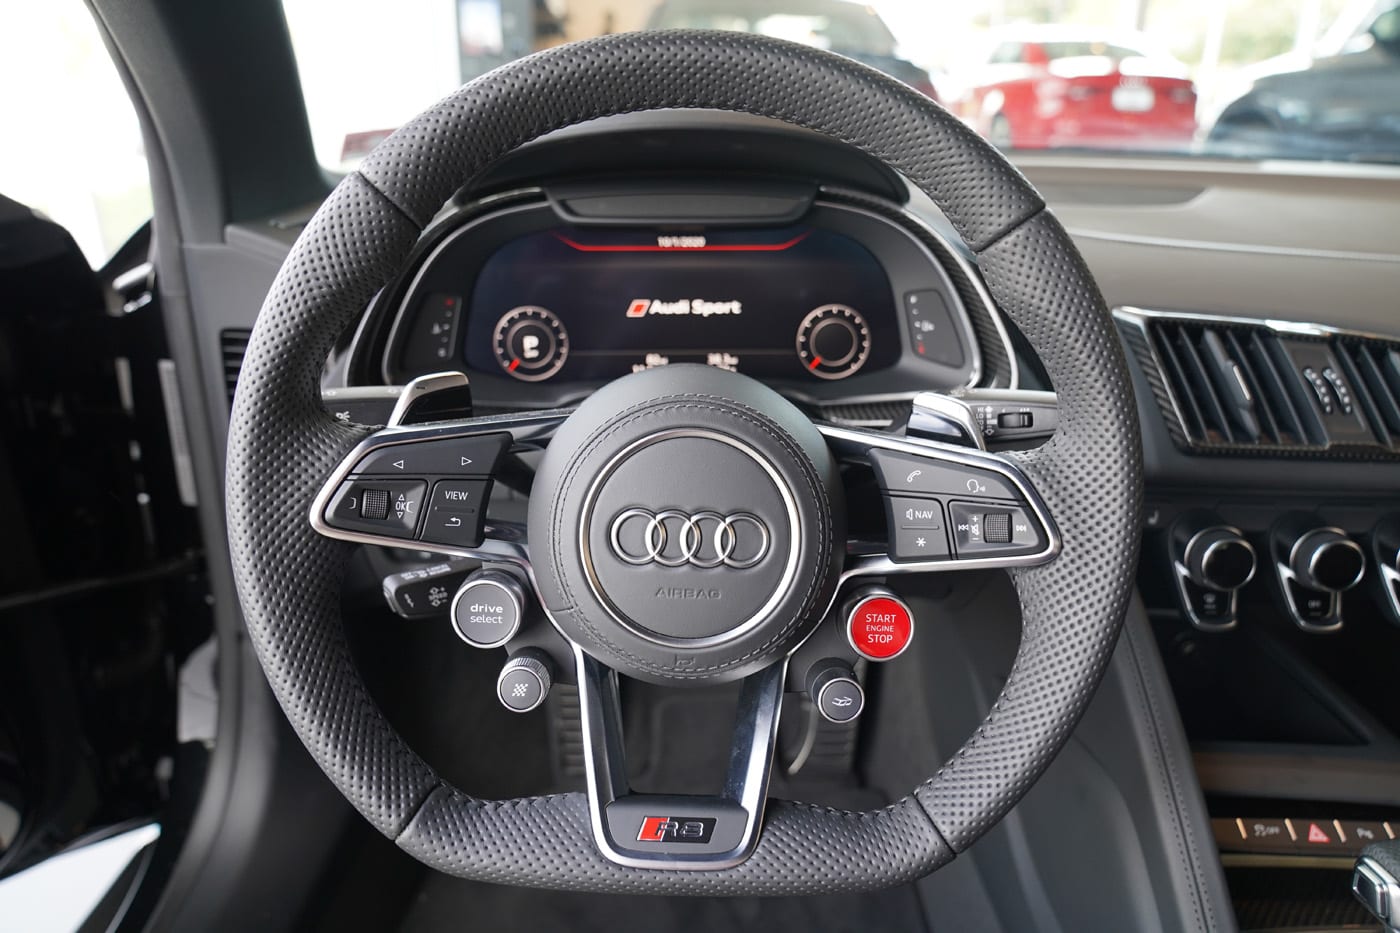 Đại gia lan đột biến chốt thêm Audi R8 cực độc, giá trị ước tính trên 20 tỷ đồng - Ảnh 4.